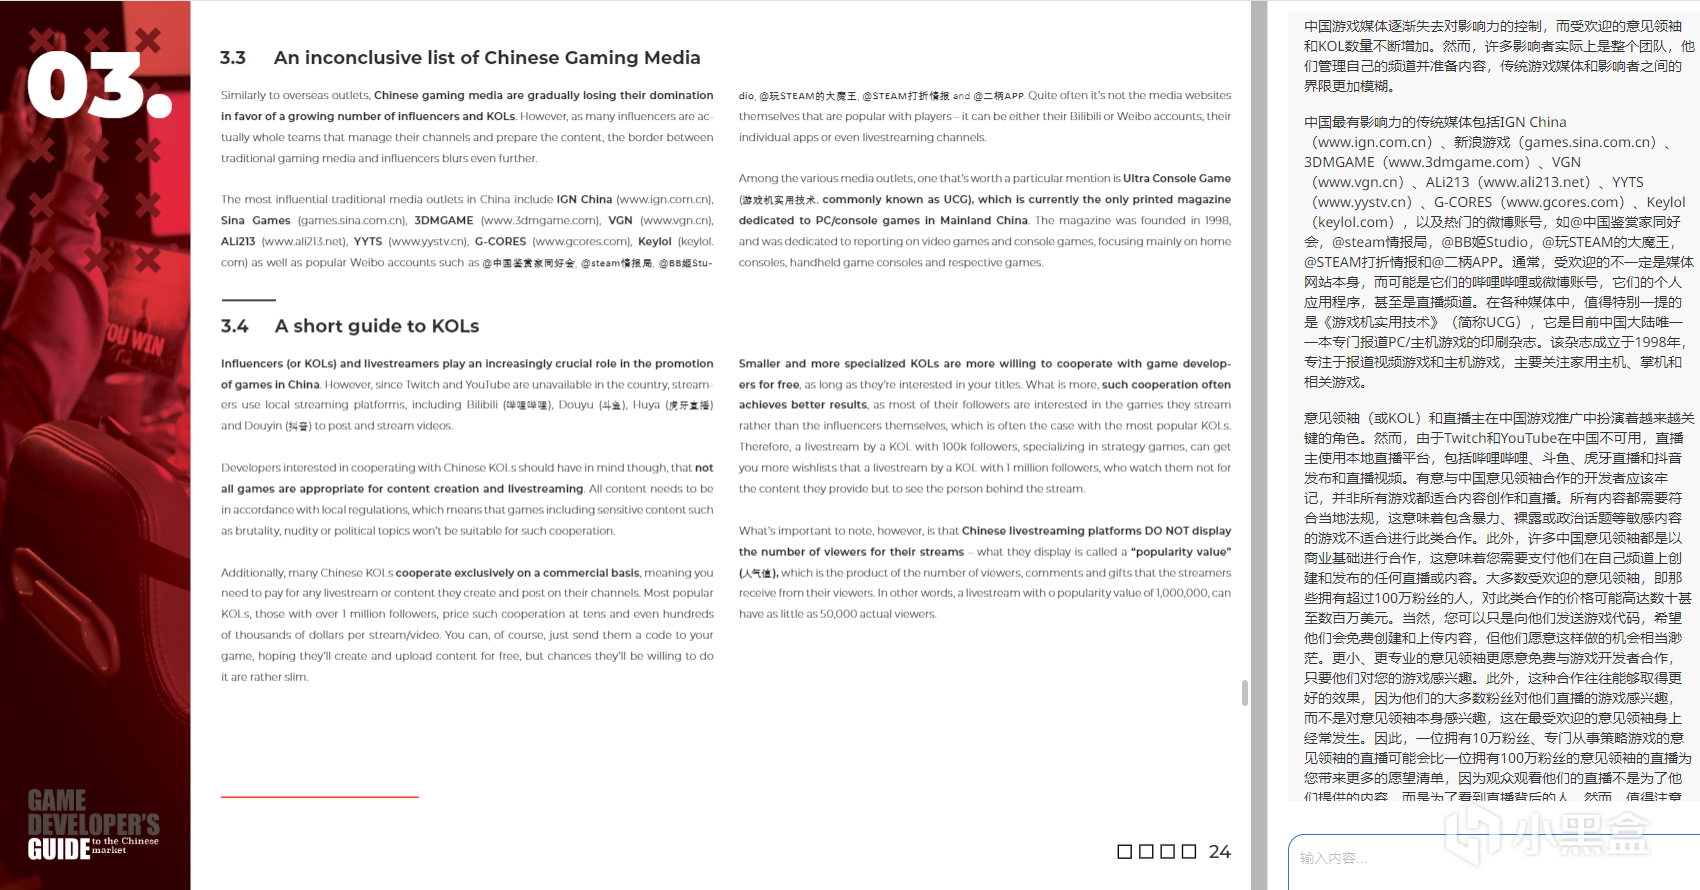 【报告精读】面向中国市场的波兰(世界)游戏开发者指南-第38张